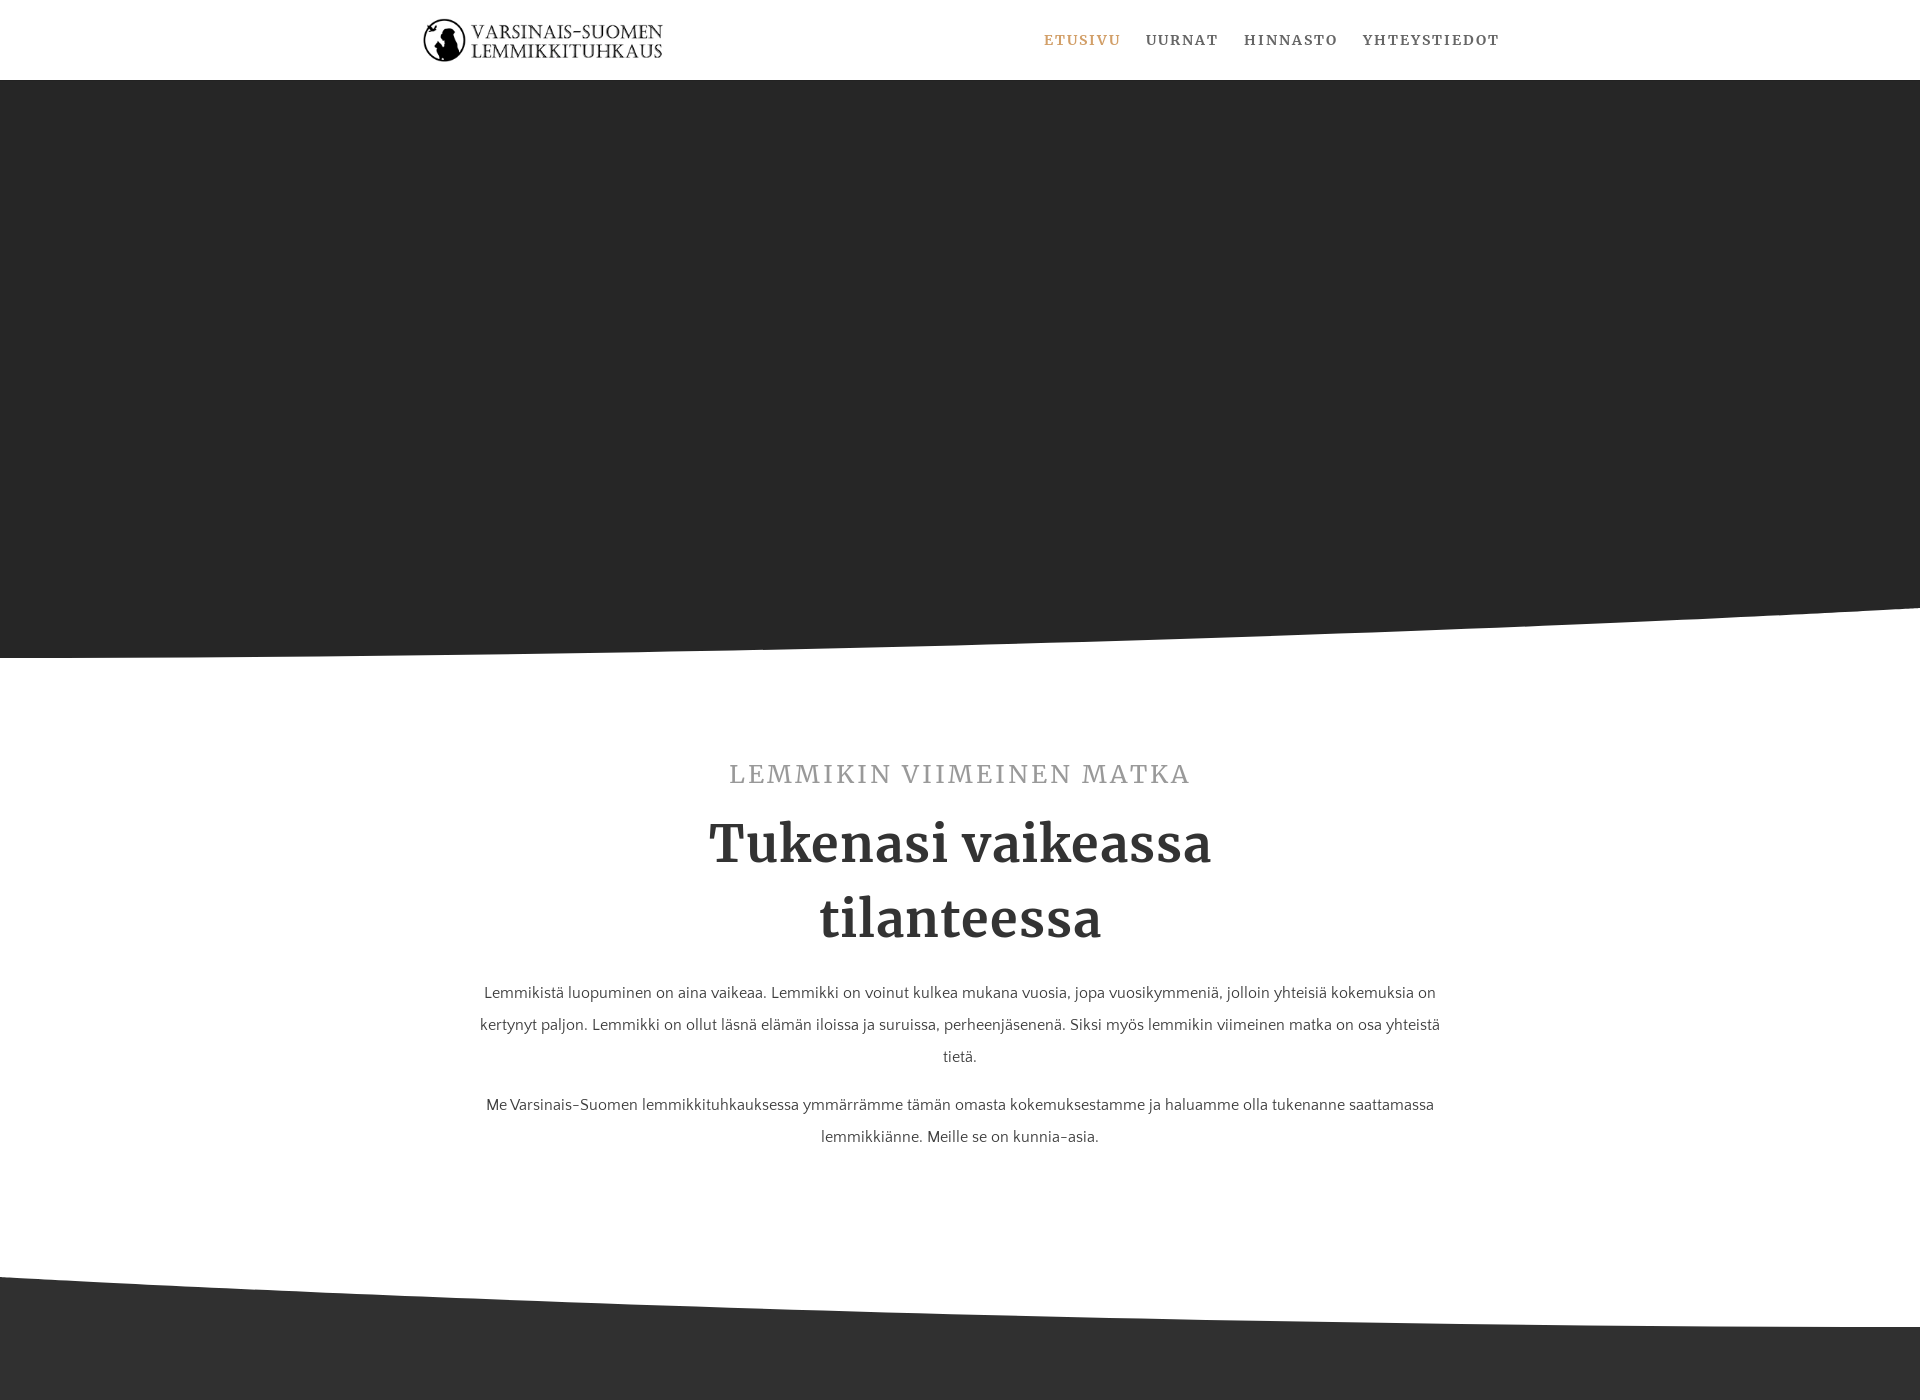 Näyttökuva lemmikkituhkaus.fi